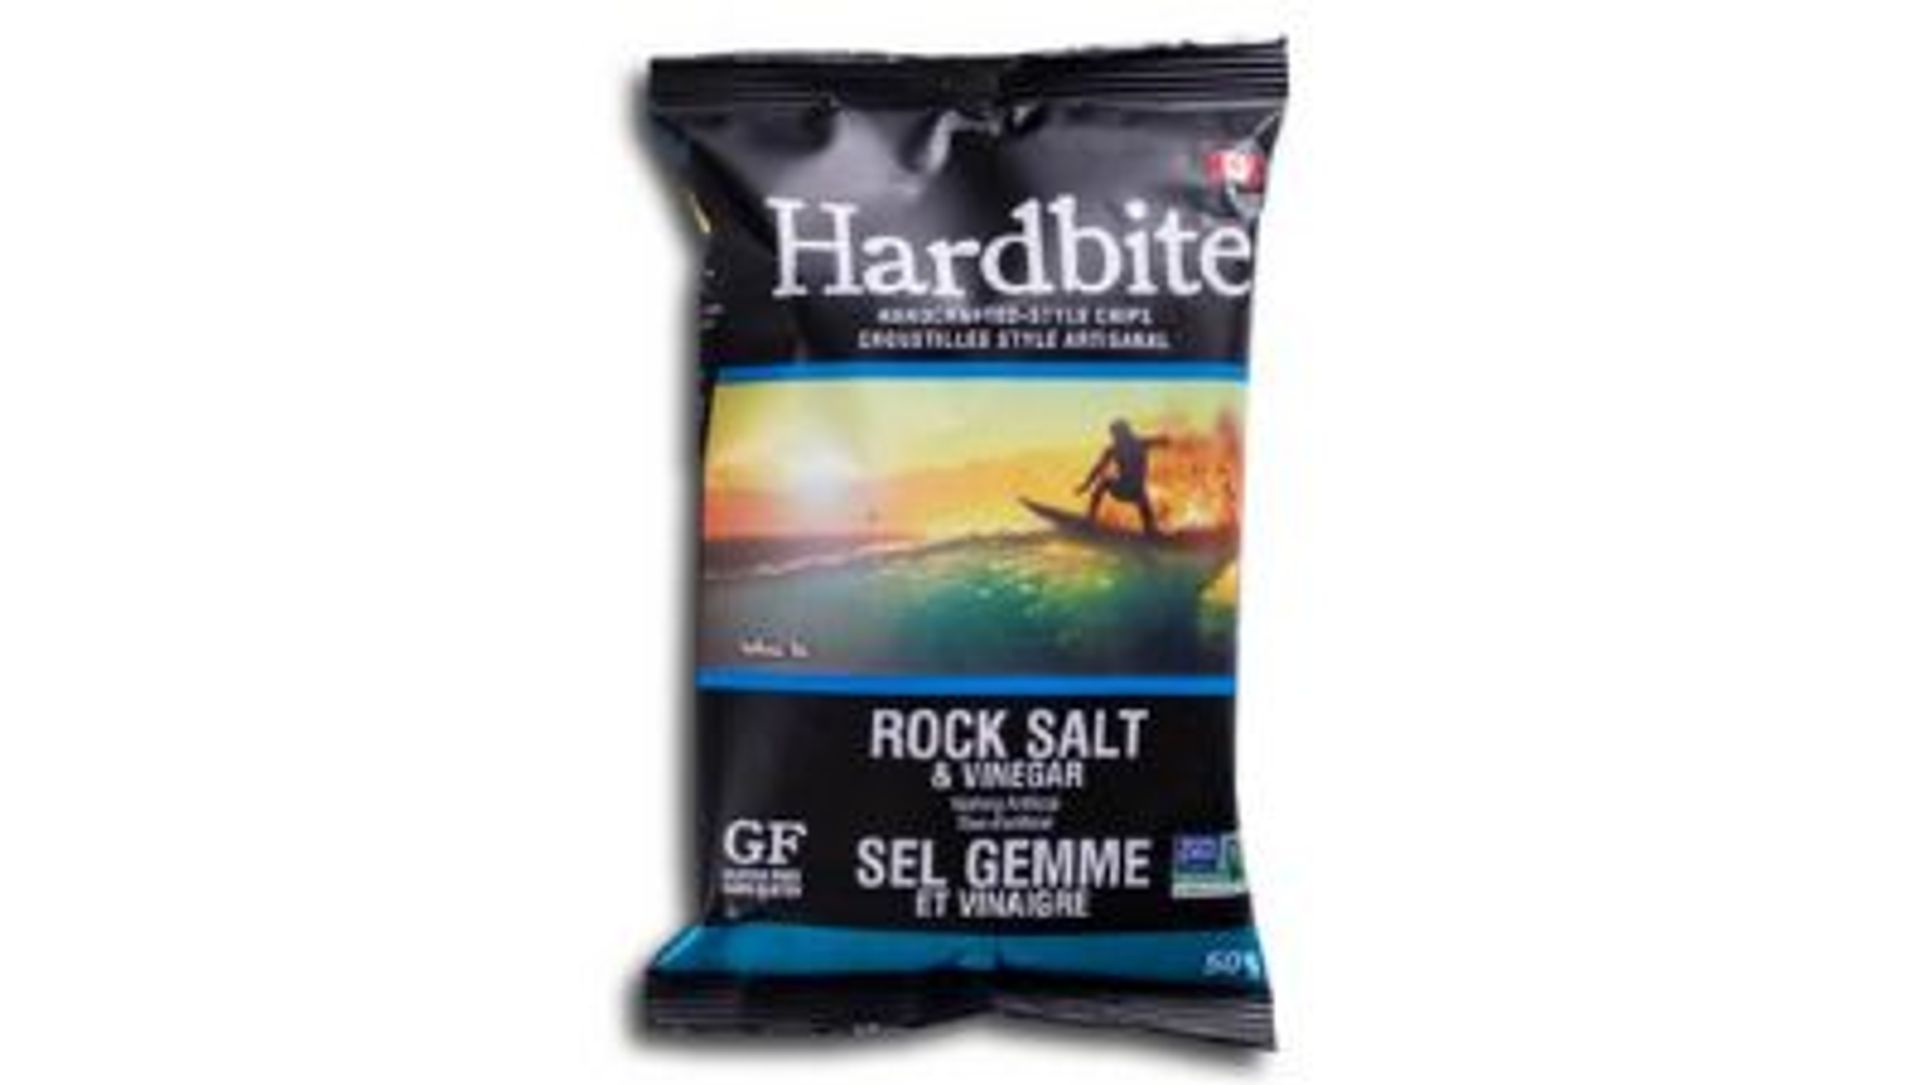 Harbite Rock Salt and Vinegar